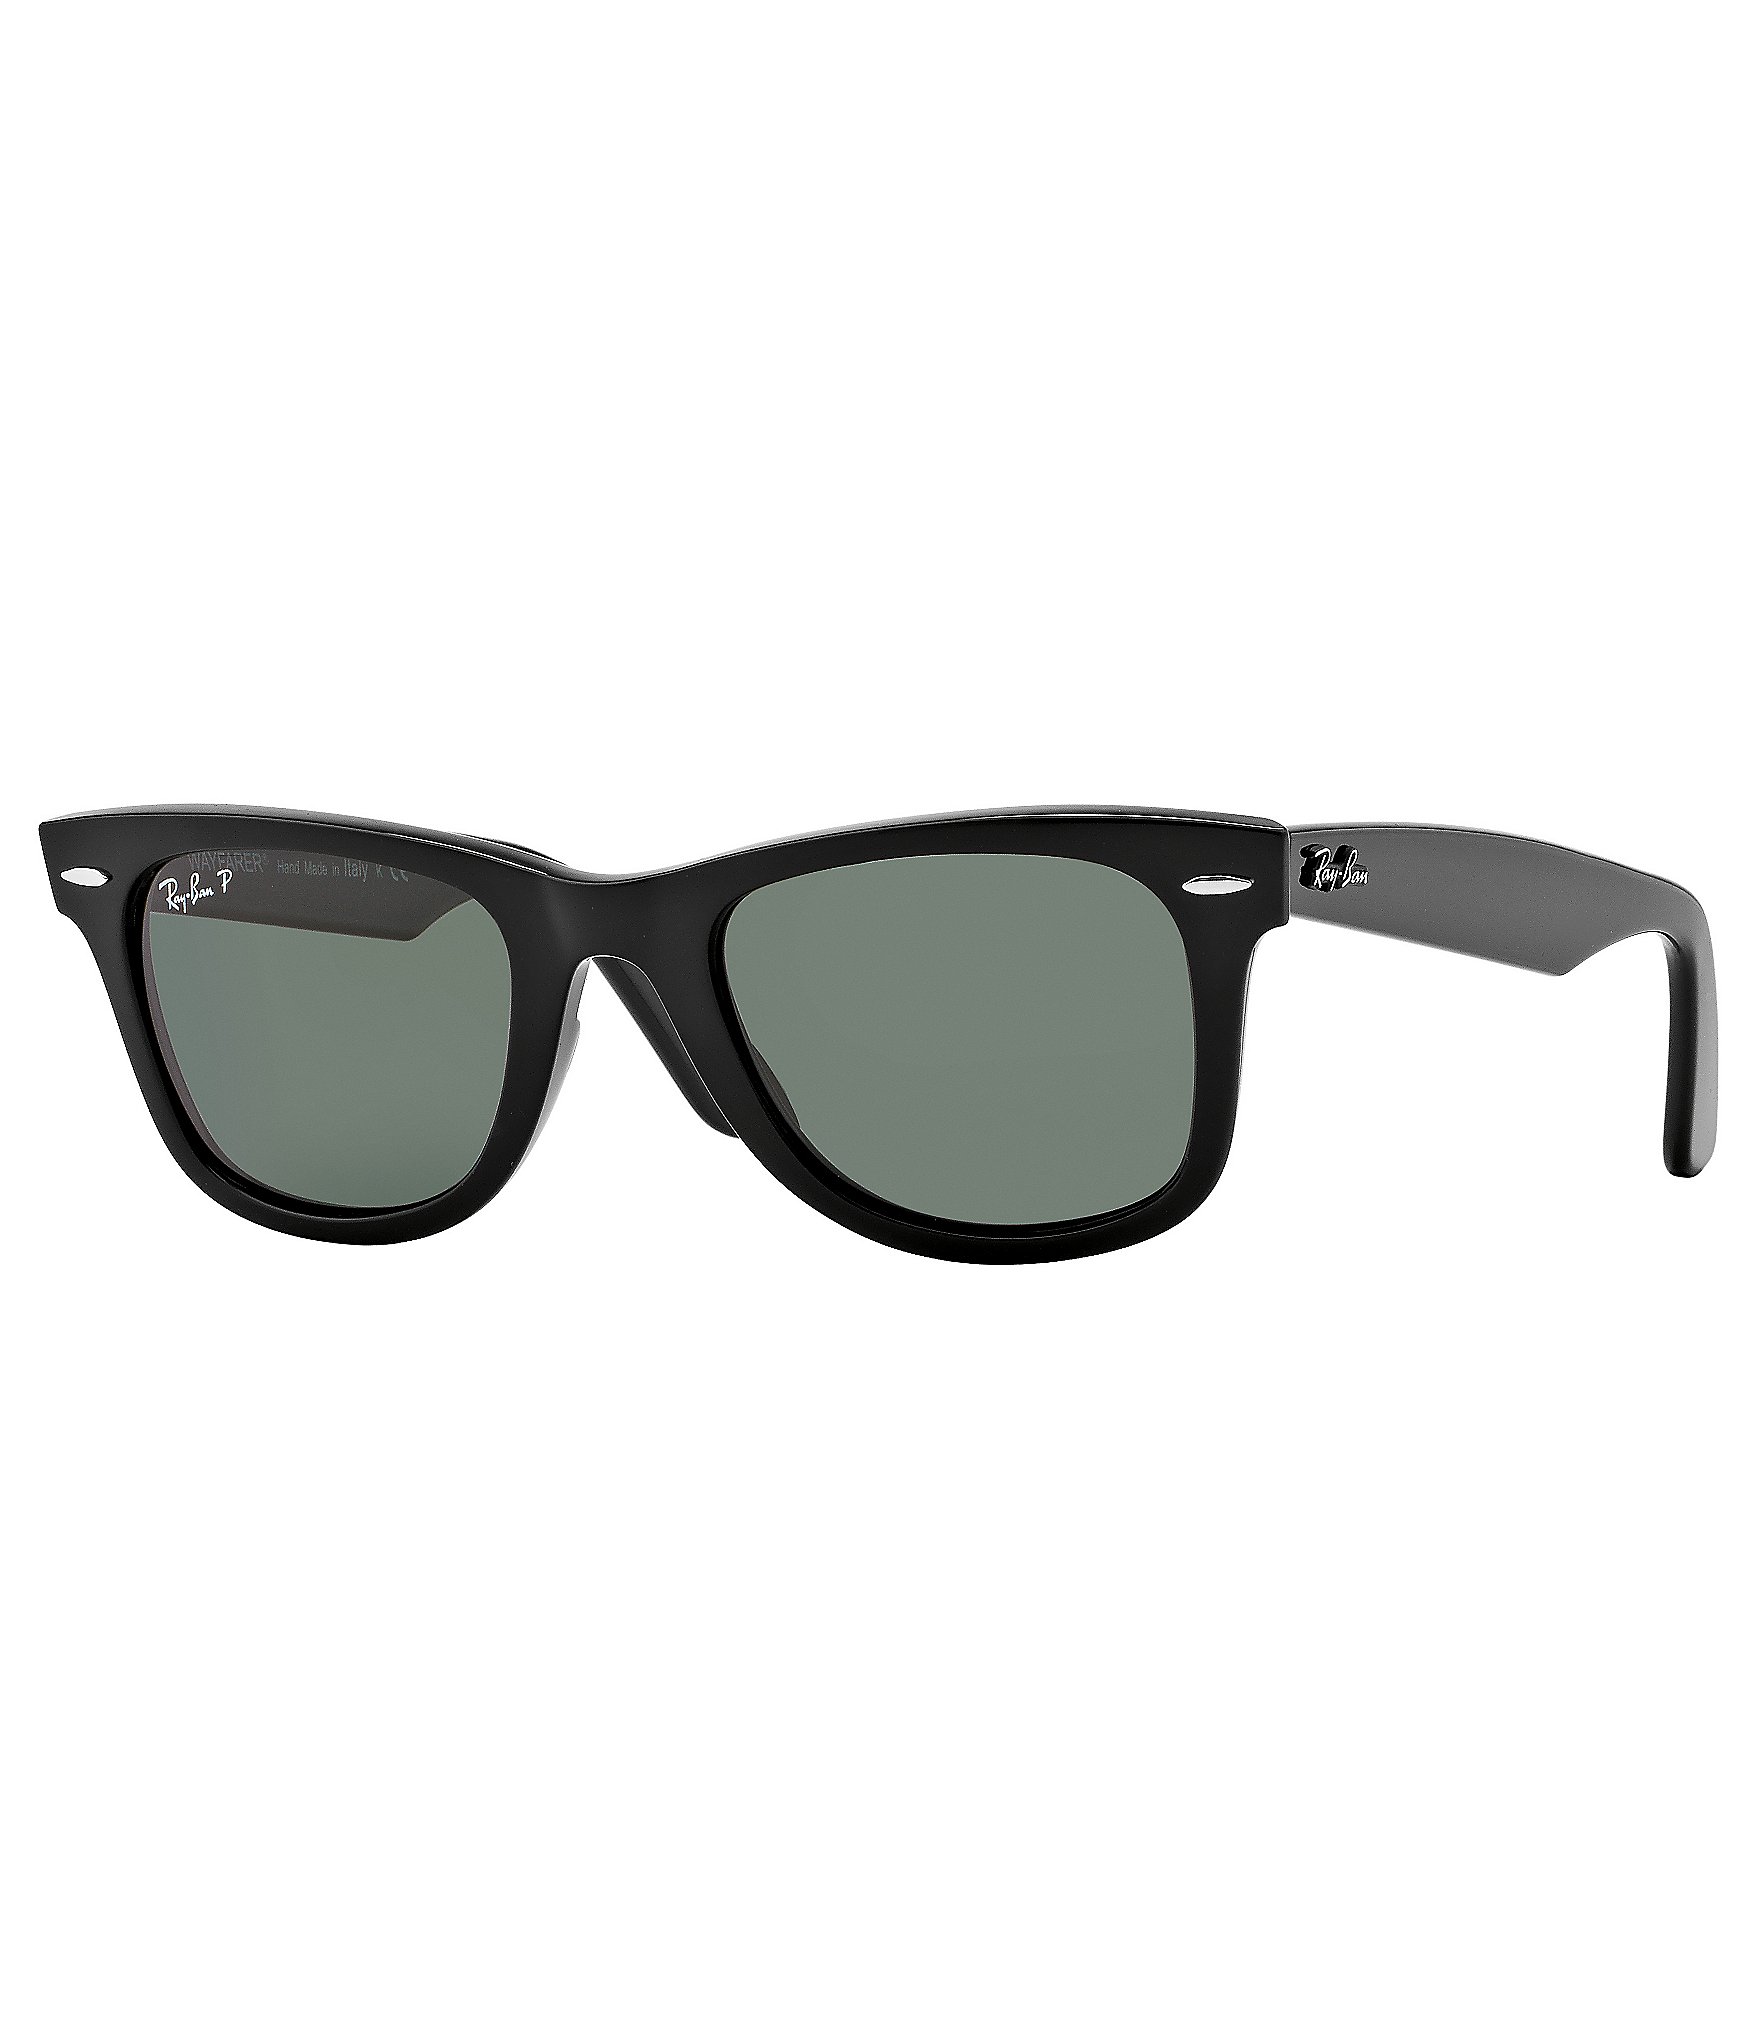 RayBan Polarized Classic Wayfarer Sunglasses Dillard's